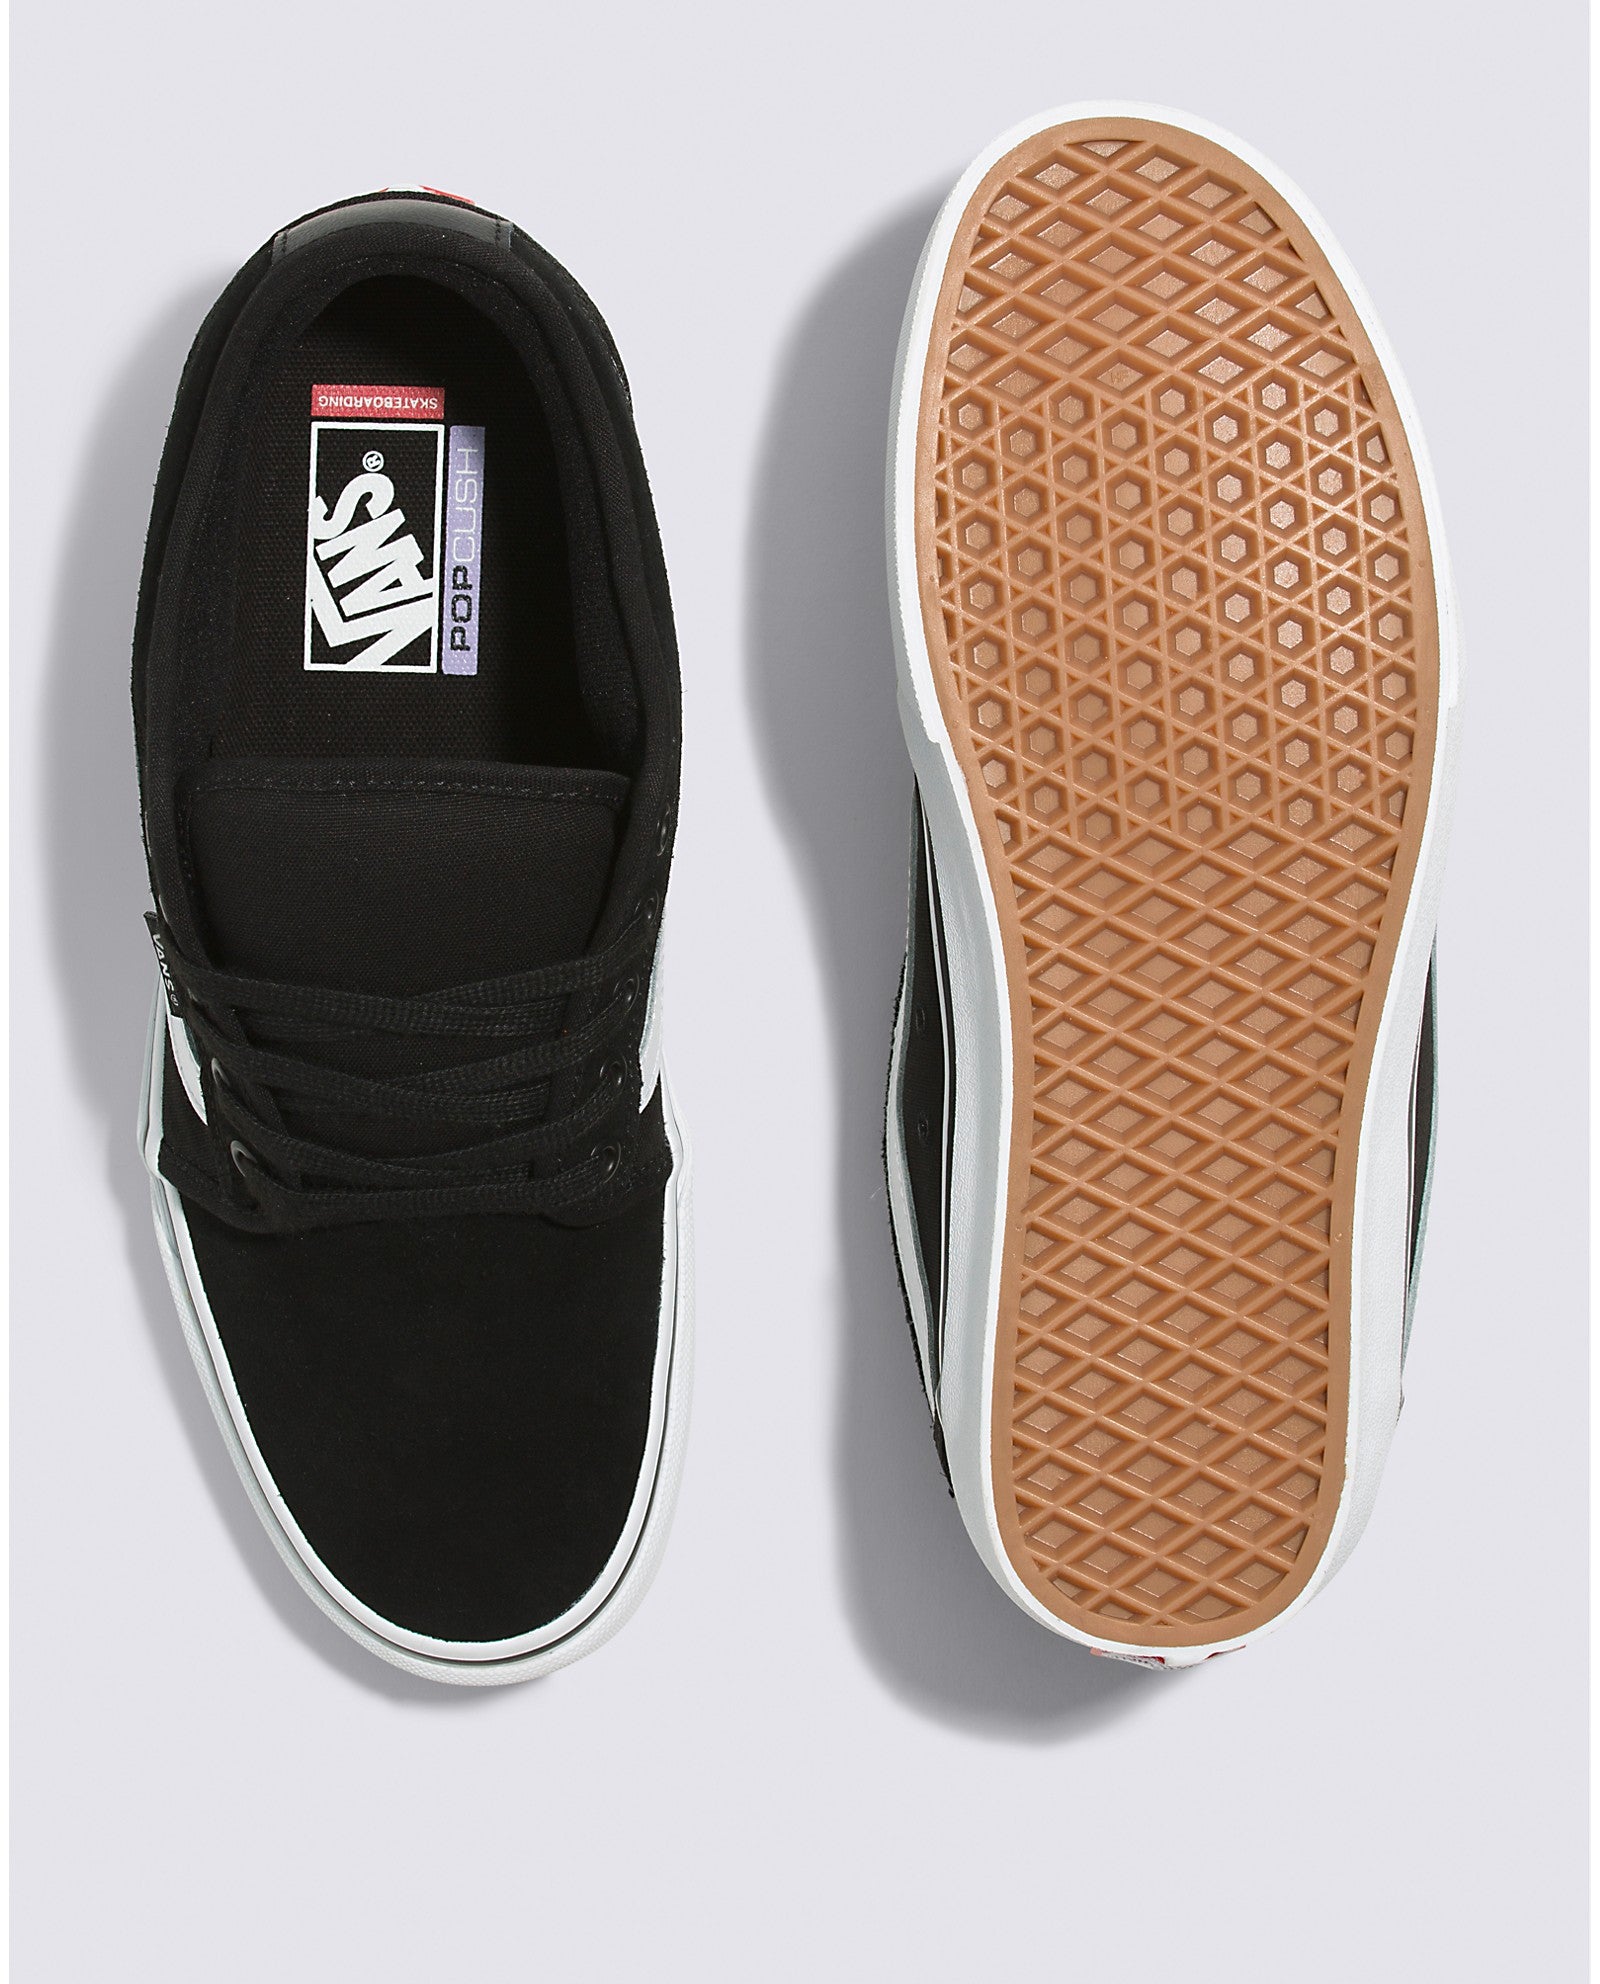 Black/White Chukka Low Sidestripe Vans Skateboard Shoe Top/Bottom